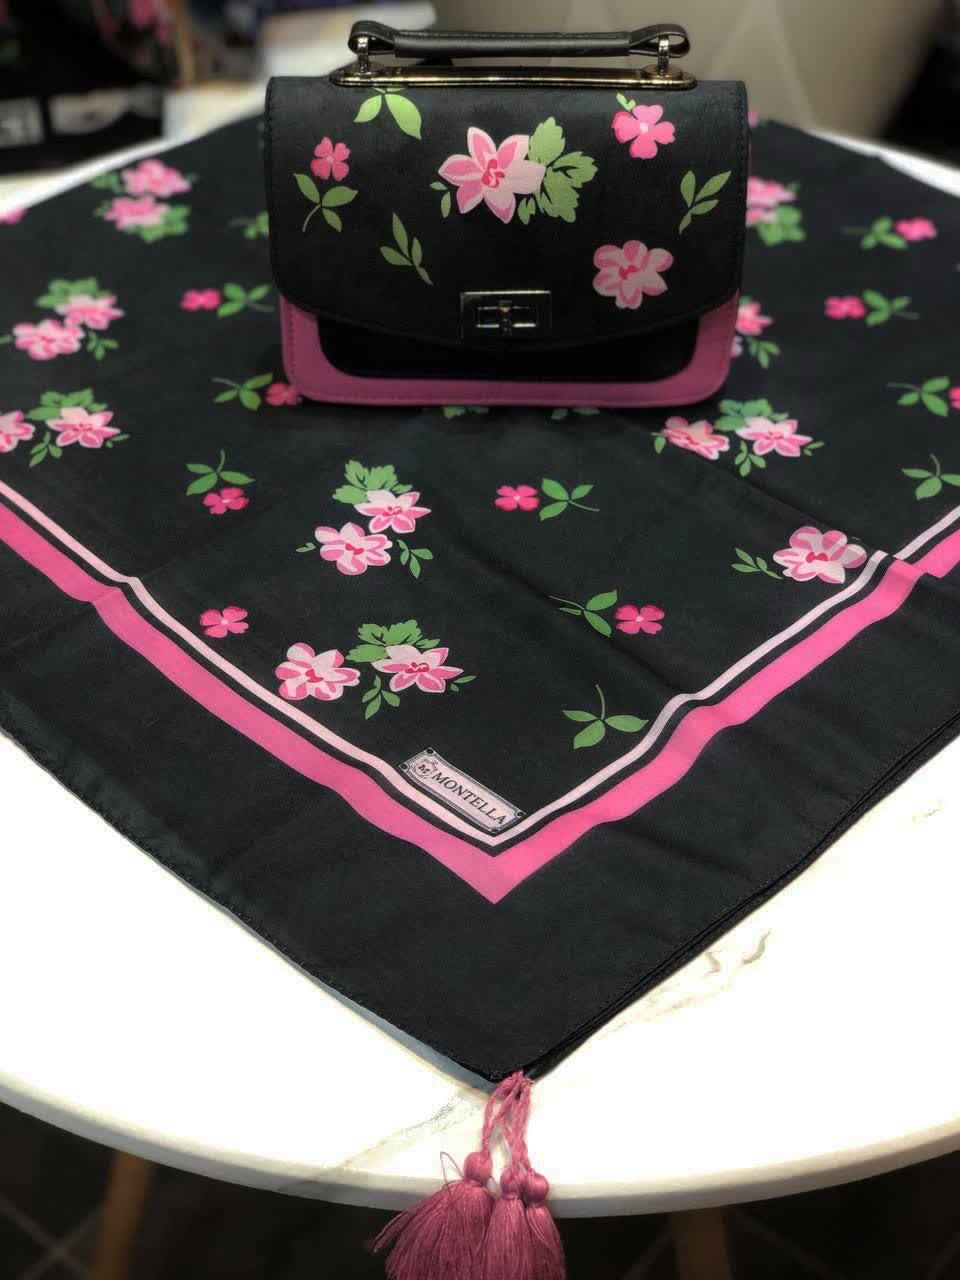 ست کیف و روسری زنانه طرح فلاور رنگ مشکی با گل های صورتی با کیف دسته چرمی کیفیت عالی با ارسال رایگان کد mo412